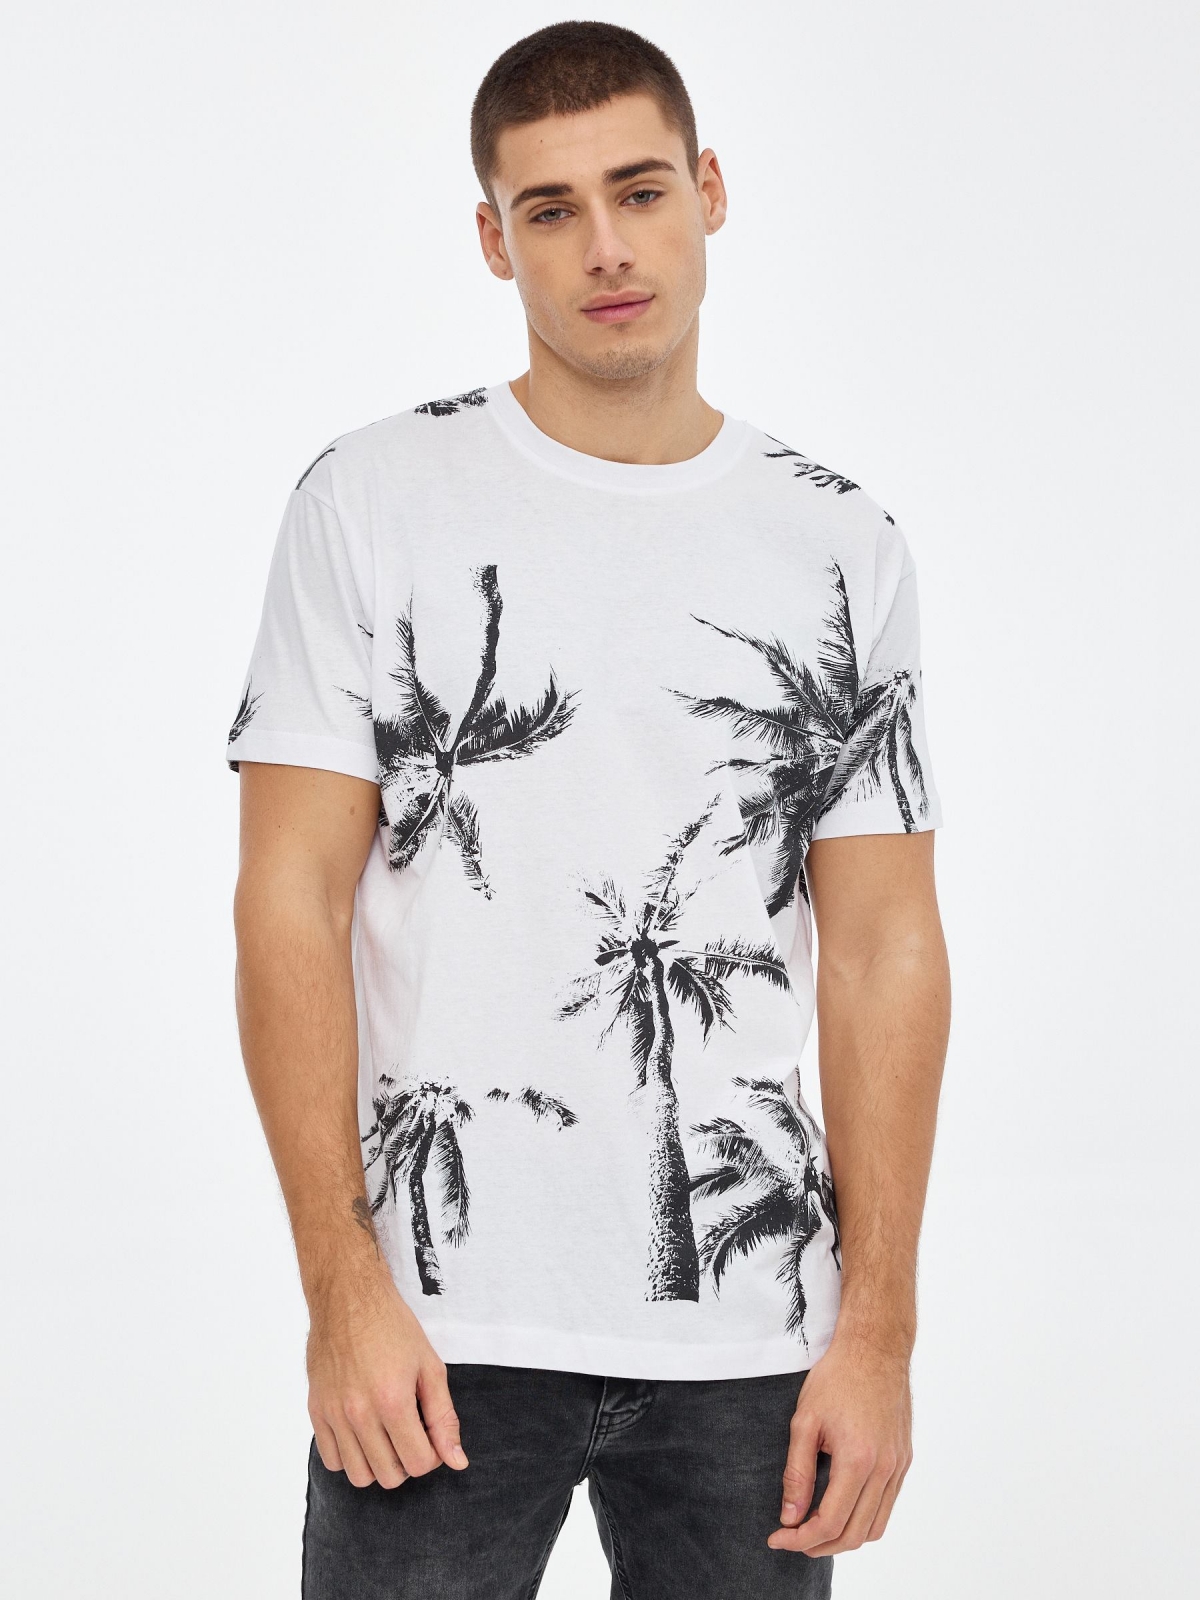 Camiseta estampado palmeras blanco vista media frontal